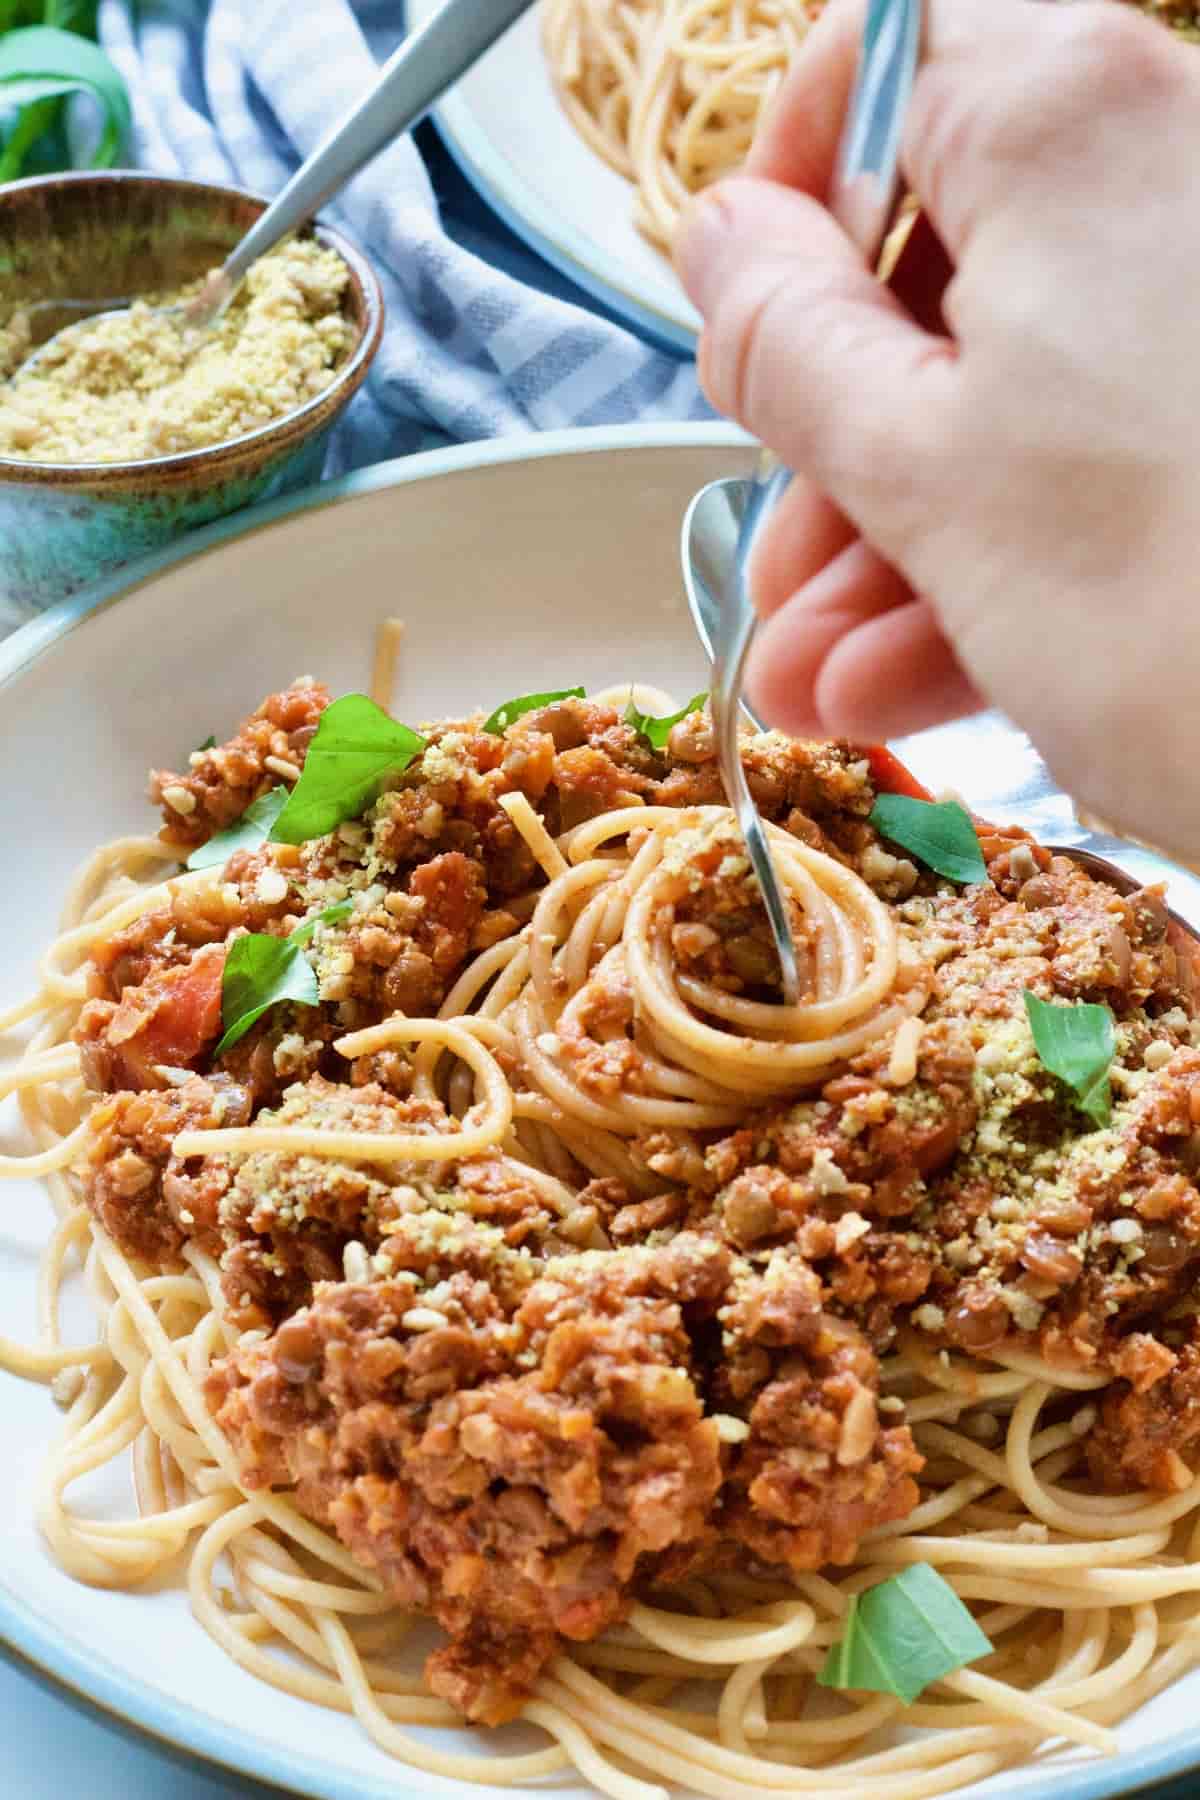 Hand picking portion of vegan spaghetti bolognese onto the fork.